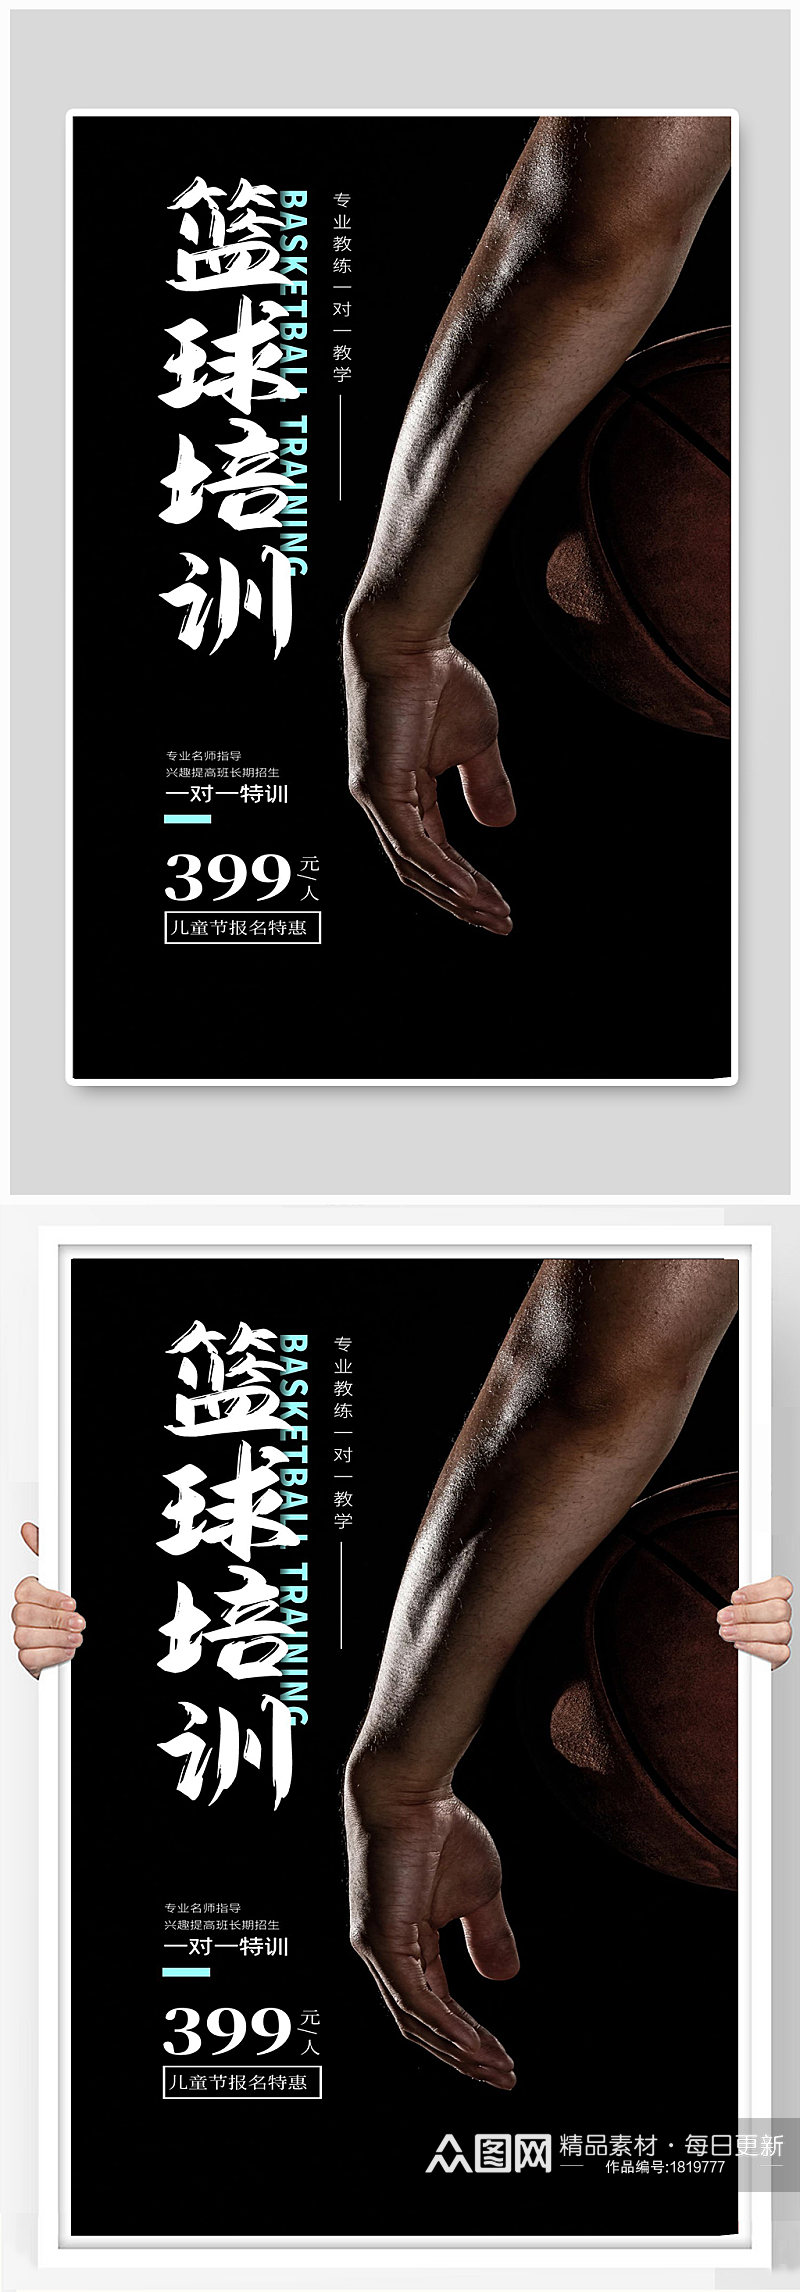 篮球培训专业一对一特价宣传海报手臂素材